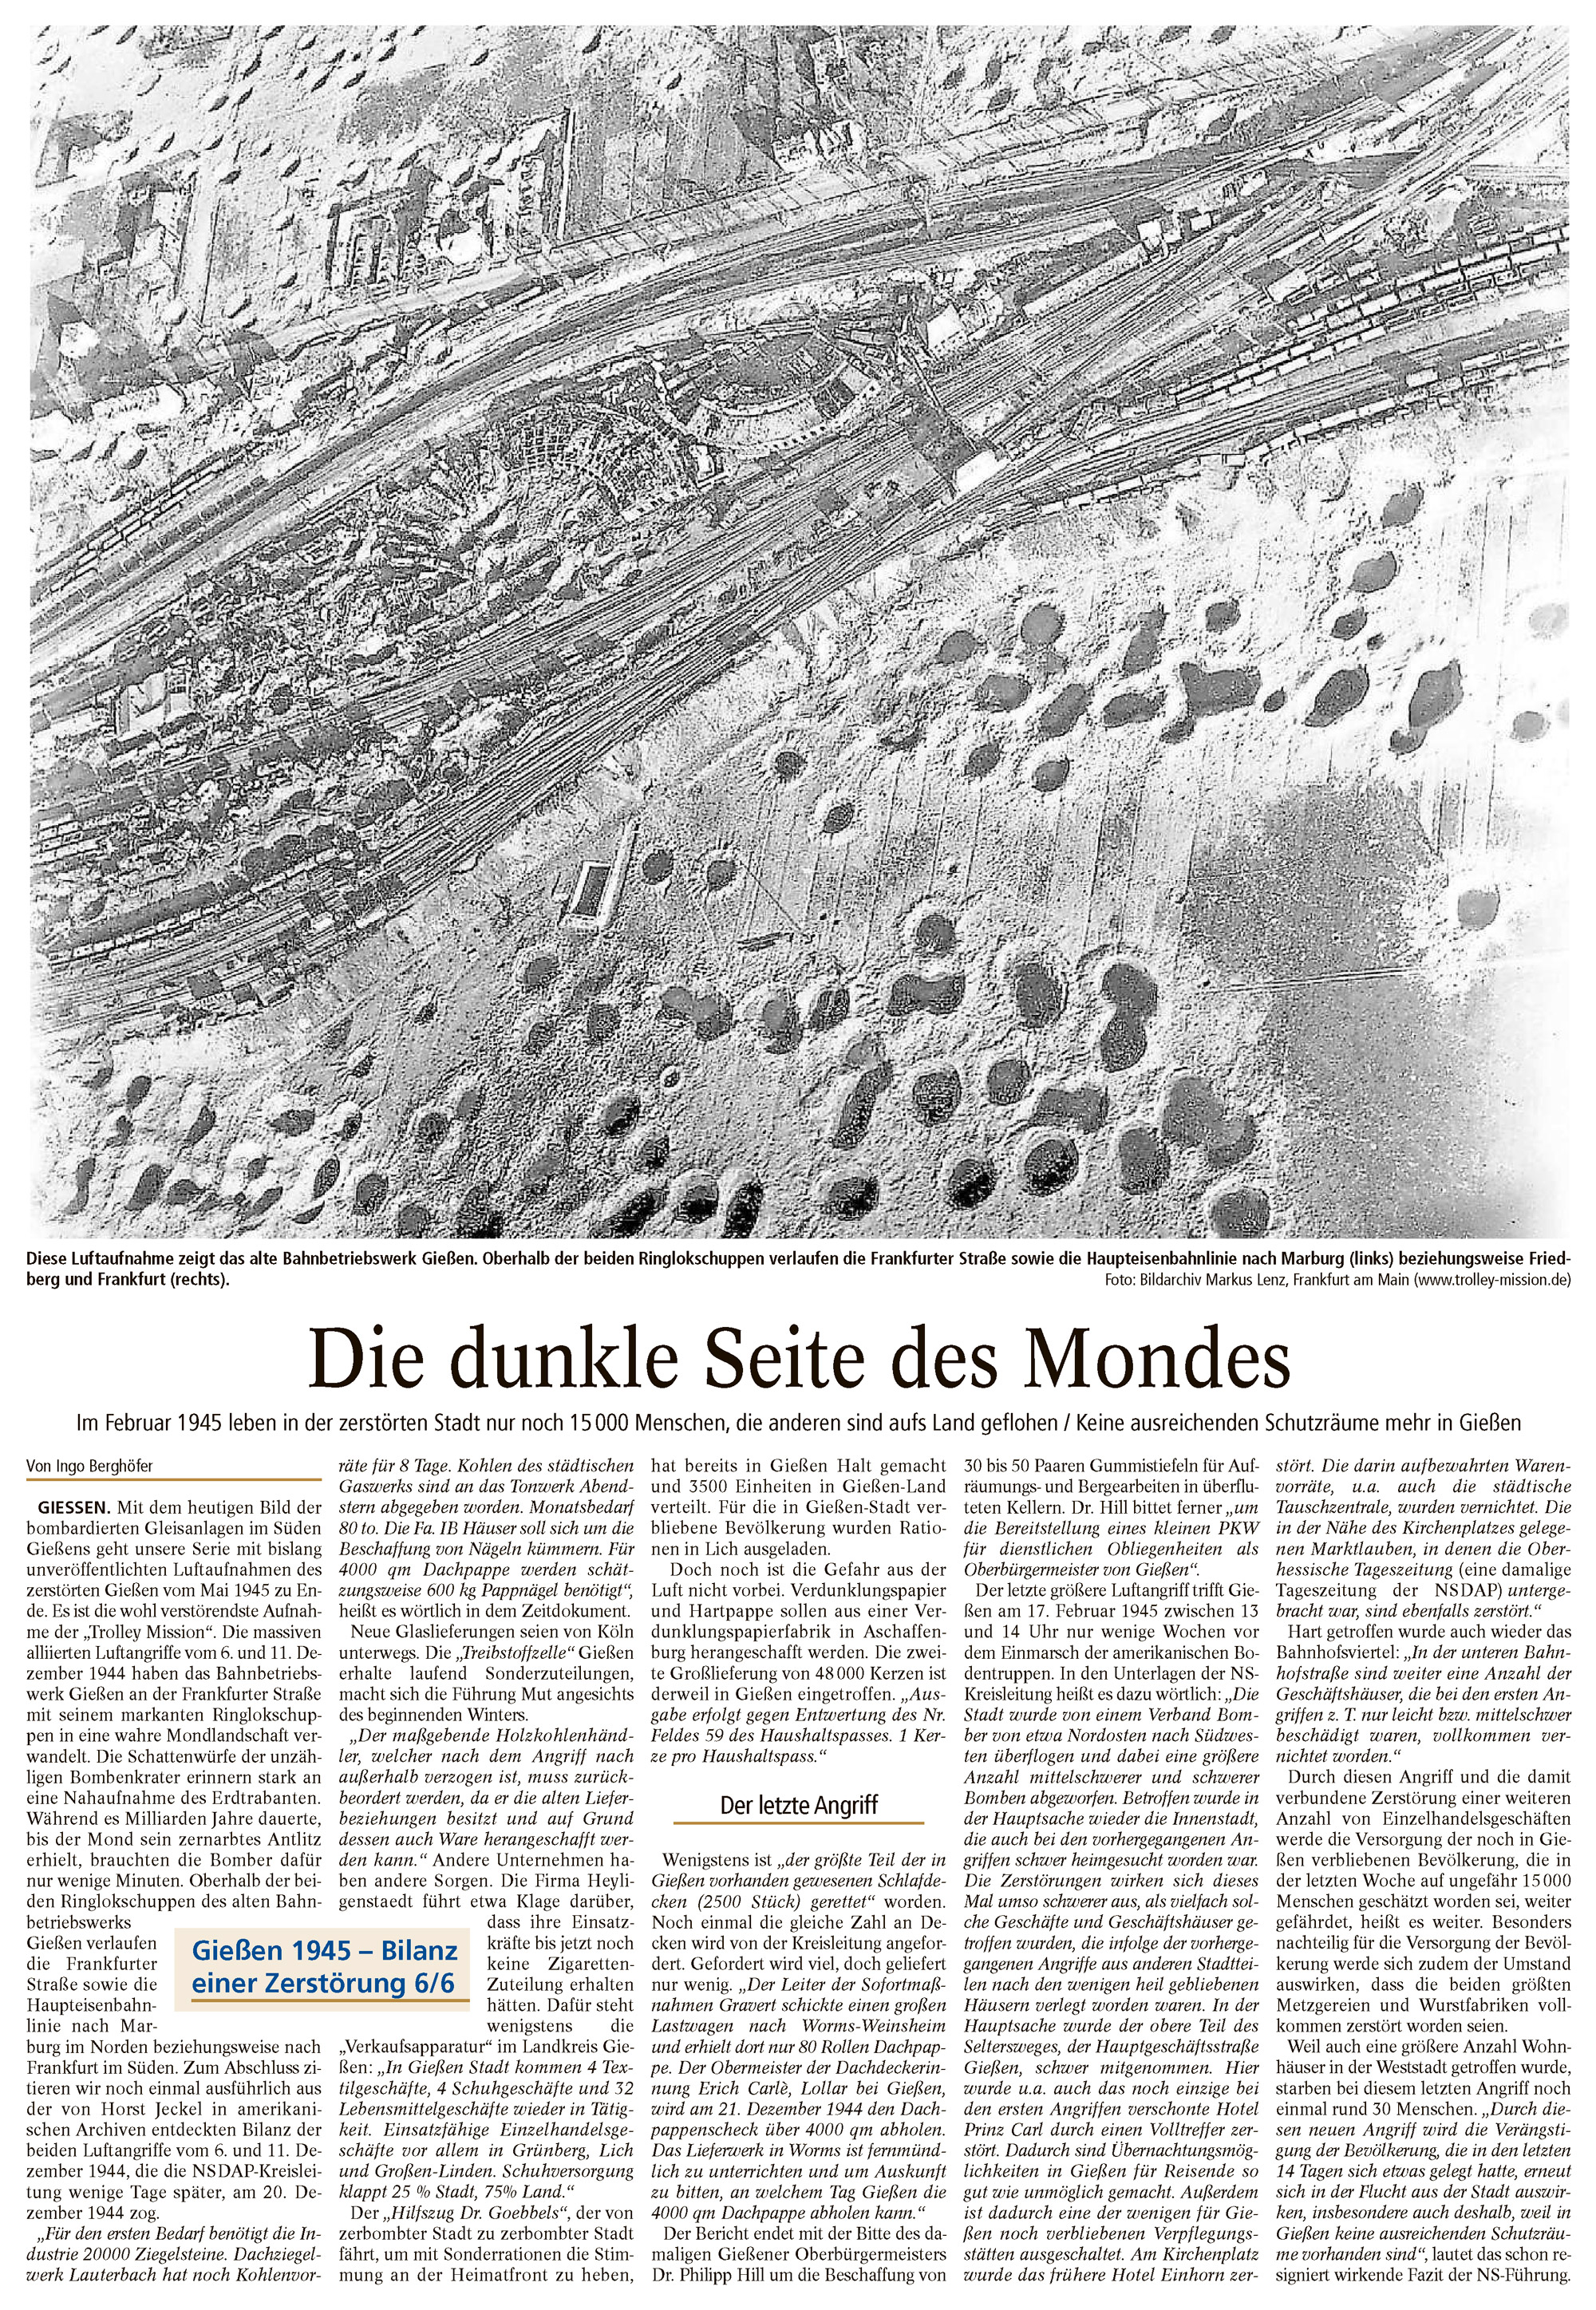 Zeitungsartikel Die dunkle Seite des Mondes - Luftaufnahmen 1945 von Markus Lenz